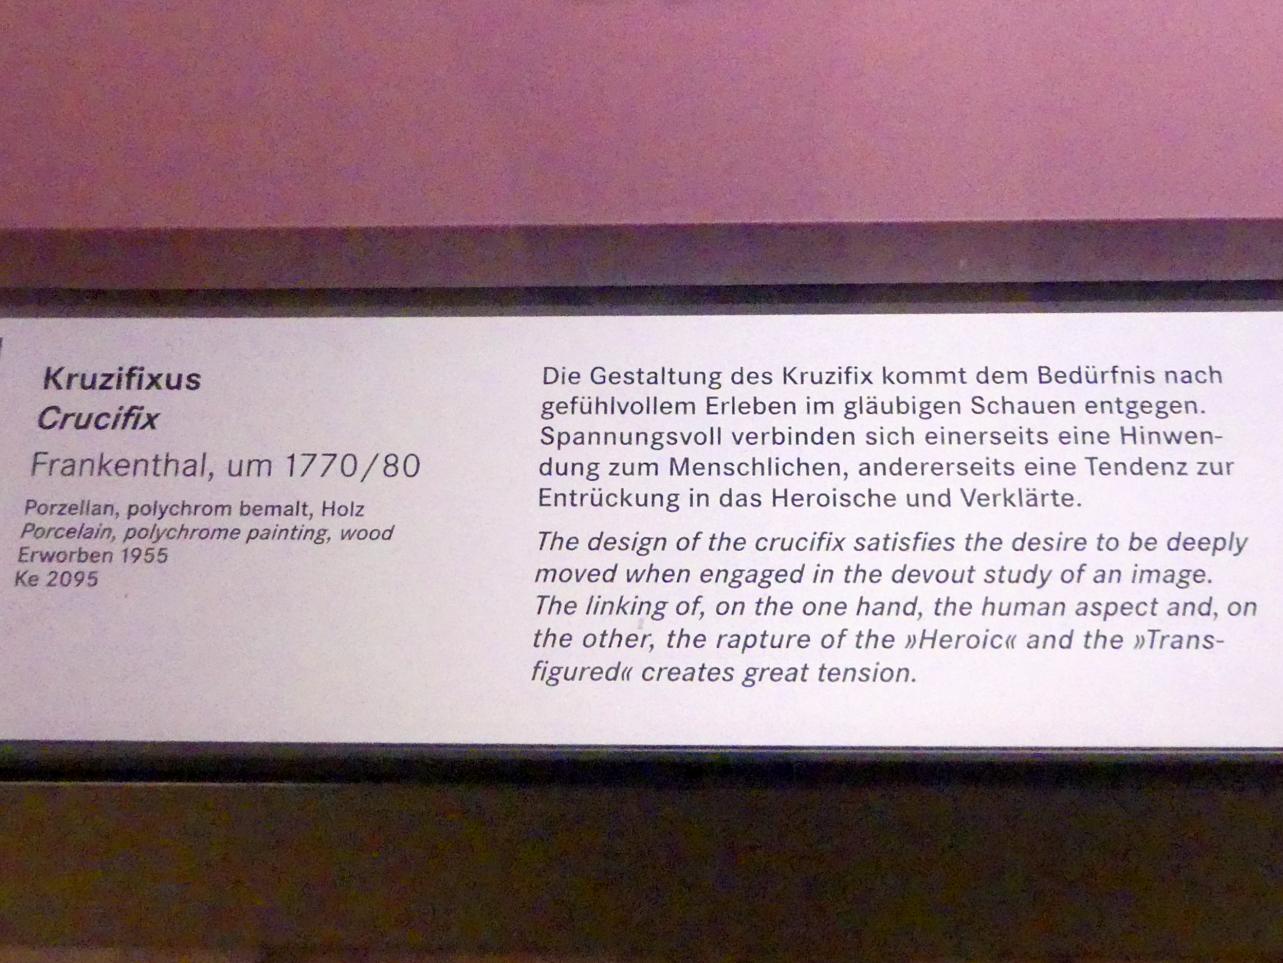 Kruzifixus, Nürnberg, Germanisches Nationalmuseum, Saal 132, um 1770–1780, Bild 2/2